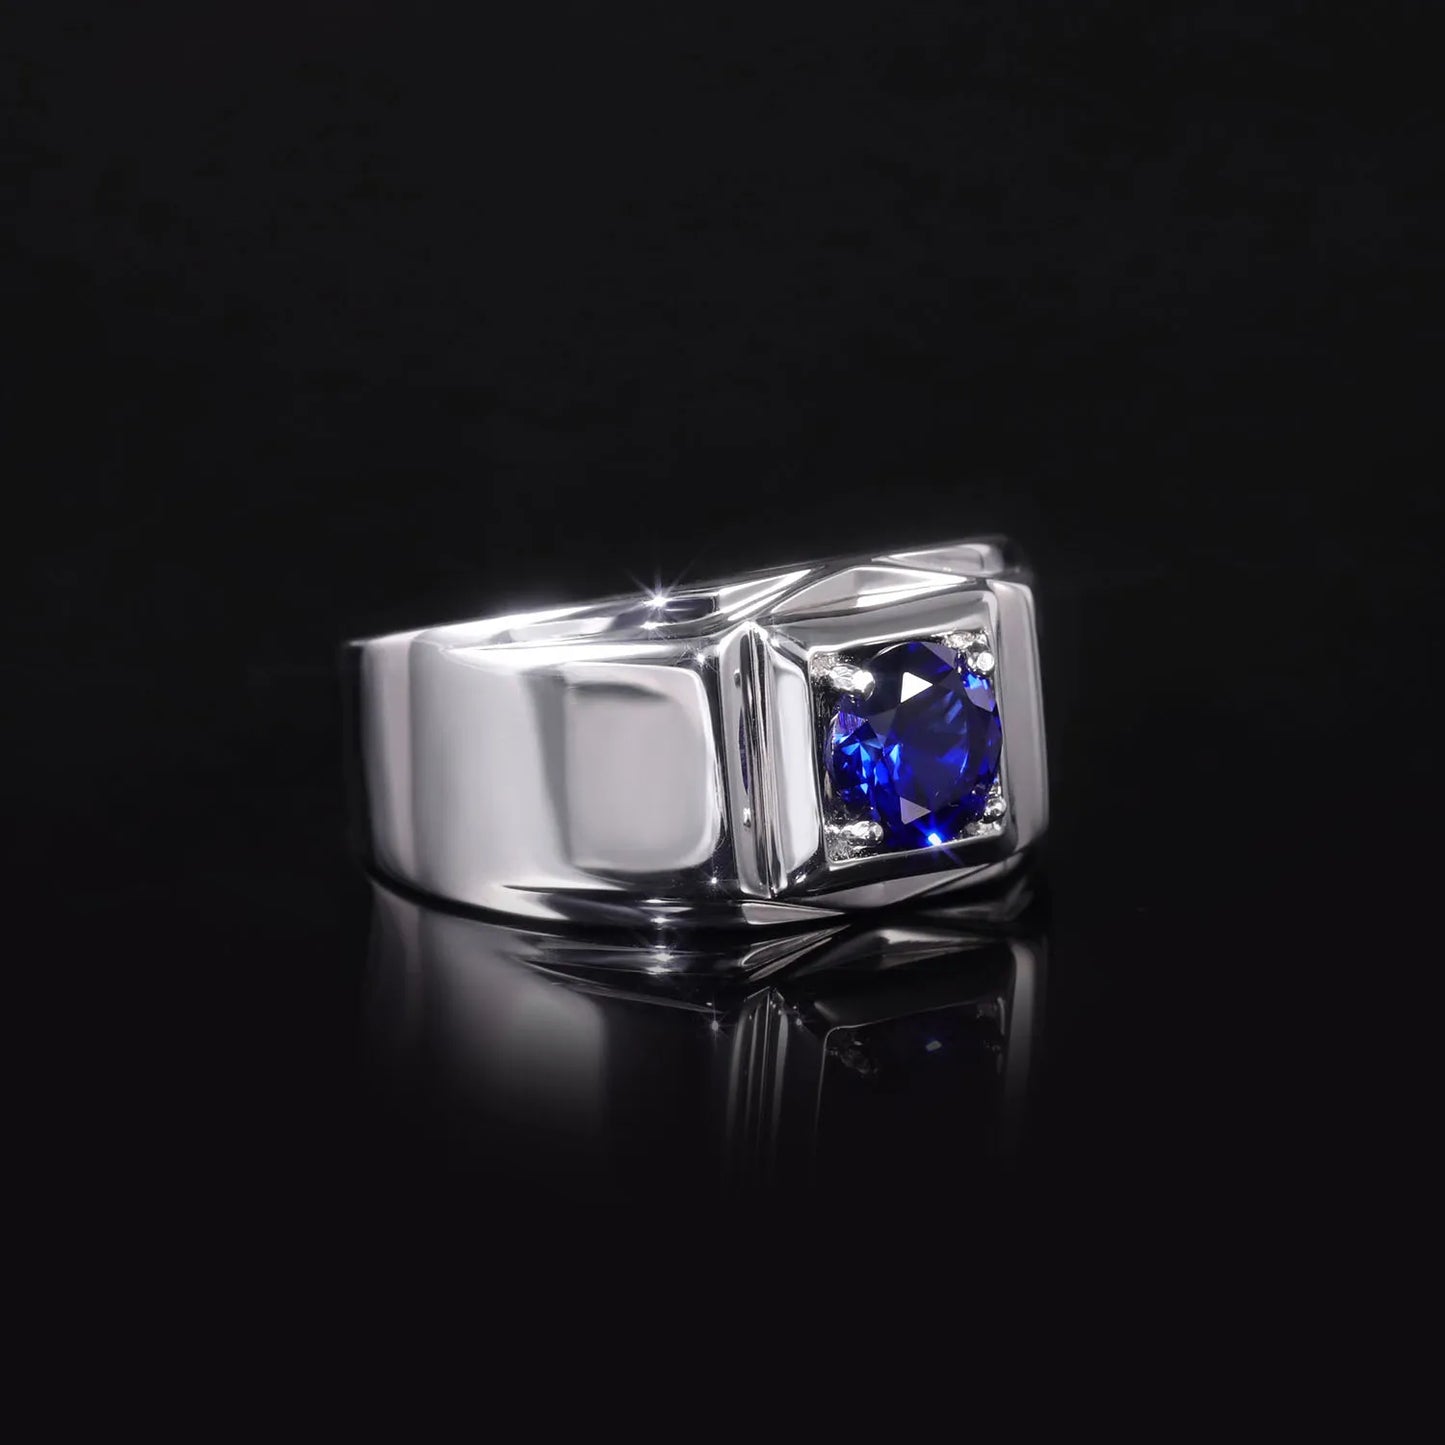 GEM'S BALLET 925 SterlingSilver Men's Engagement Rings 6.5mm Round Lab Grown Sapphire September Birthstone Gift For Him